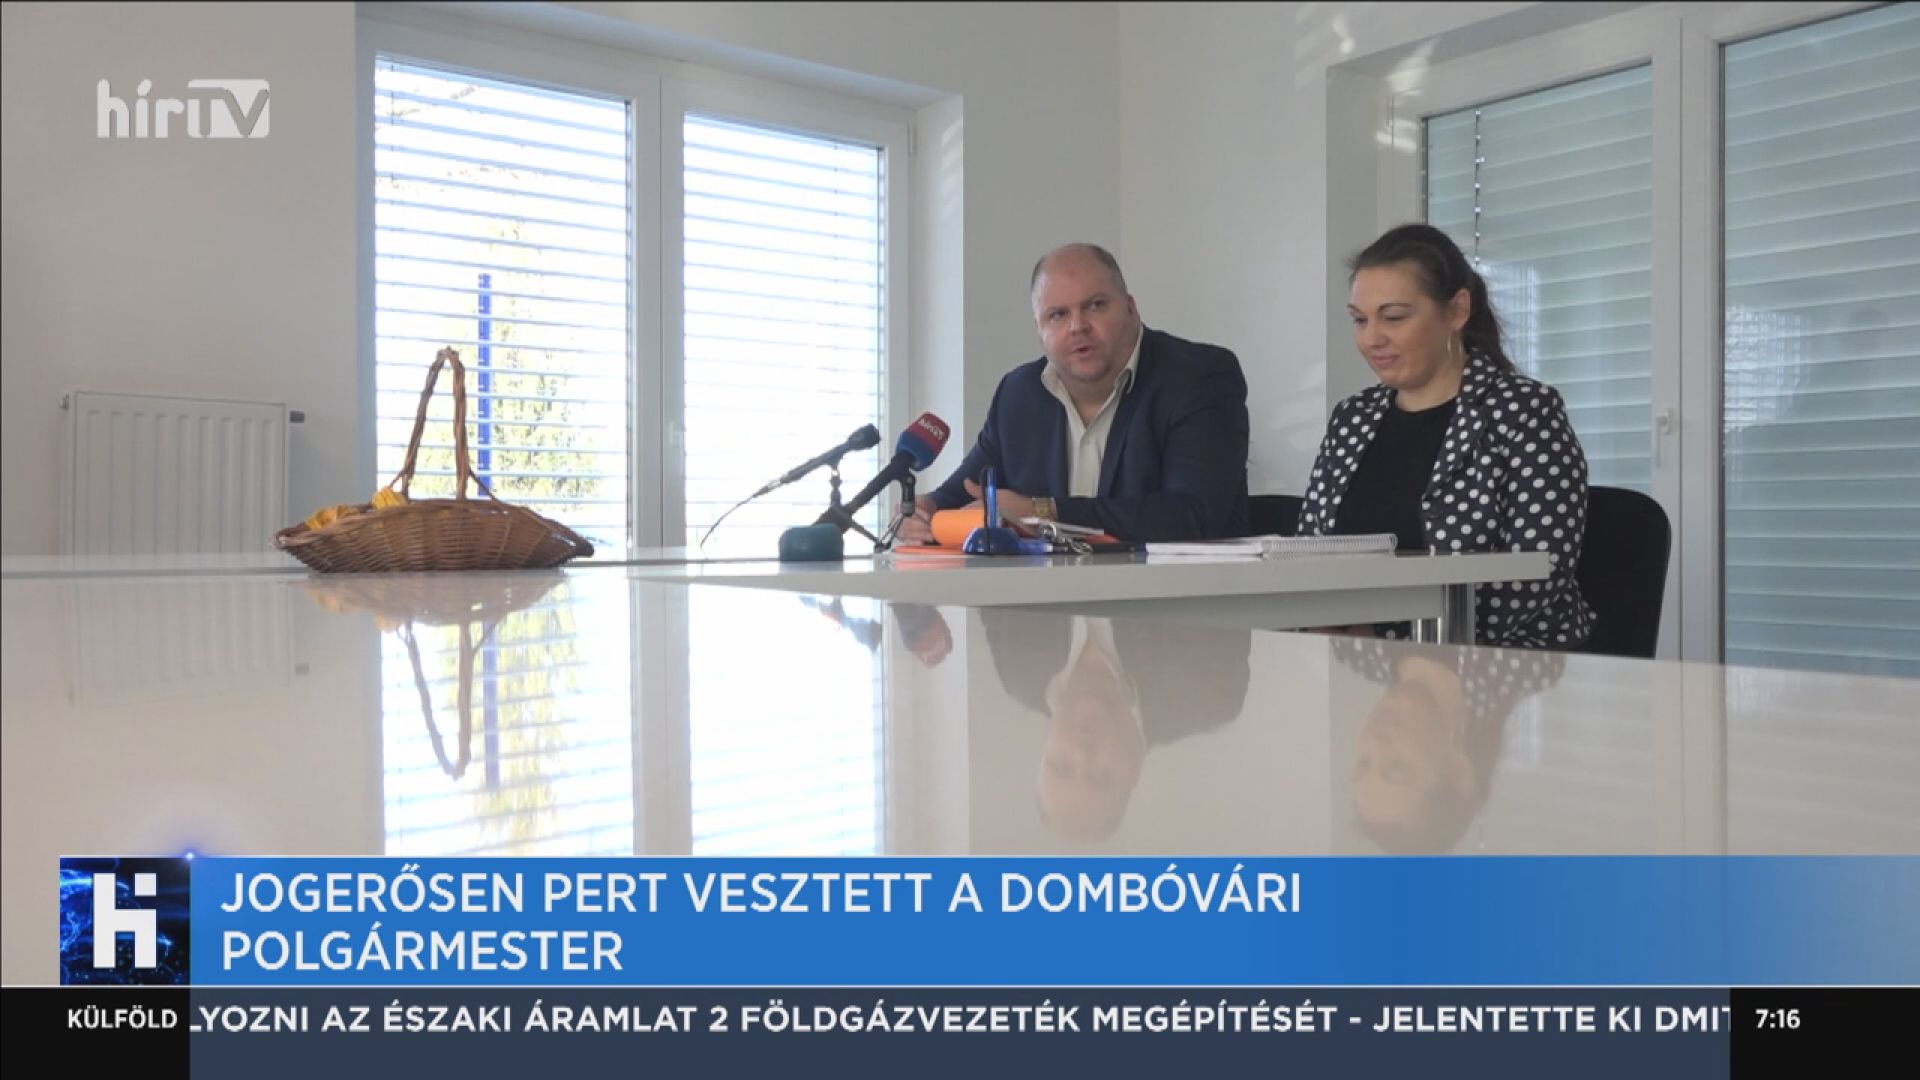 Jogerősen pert vesztett a dombóvári polgármester